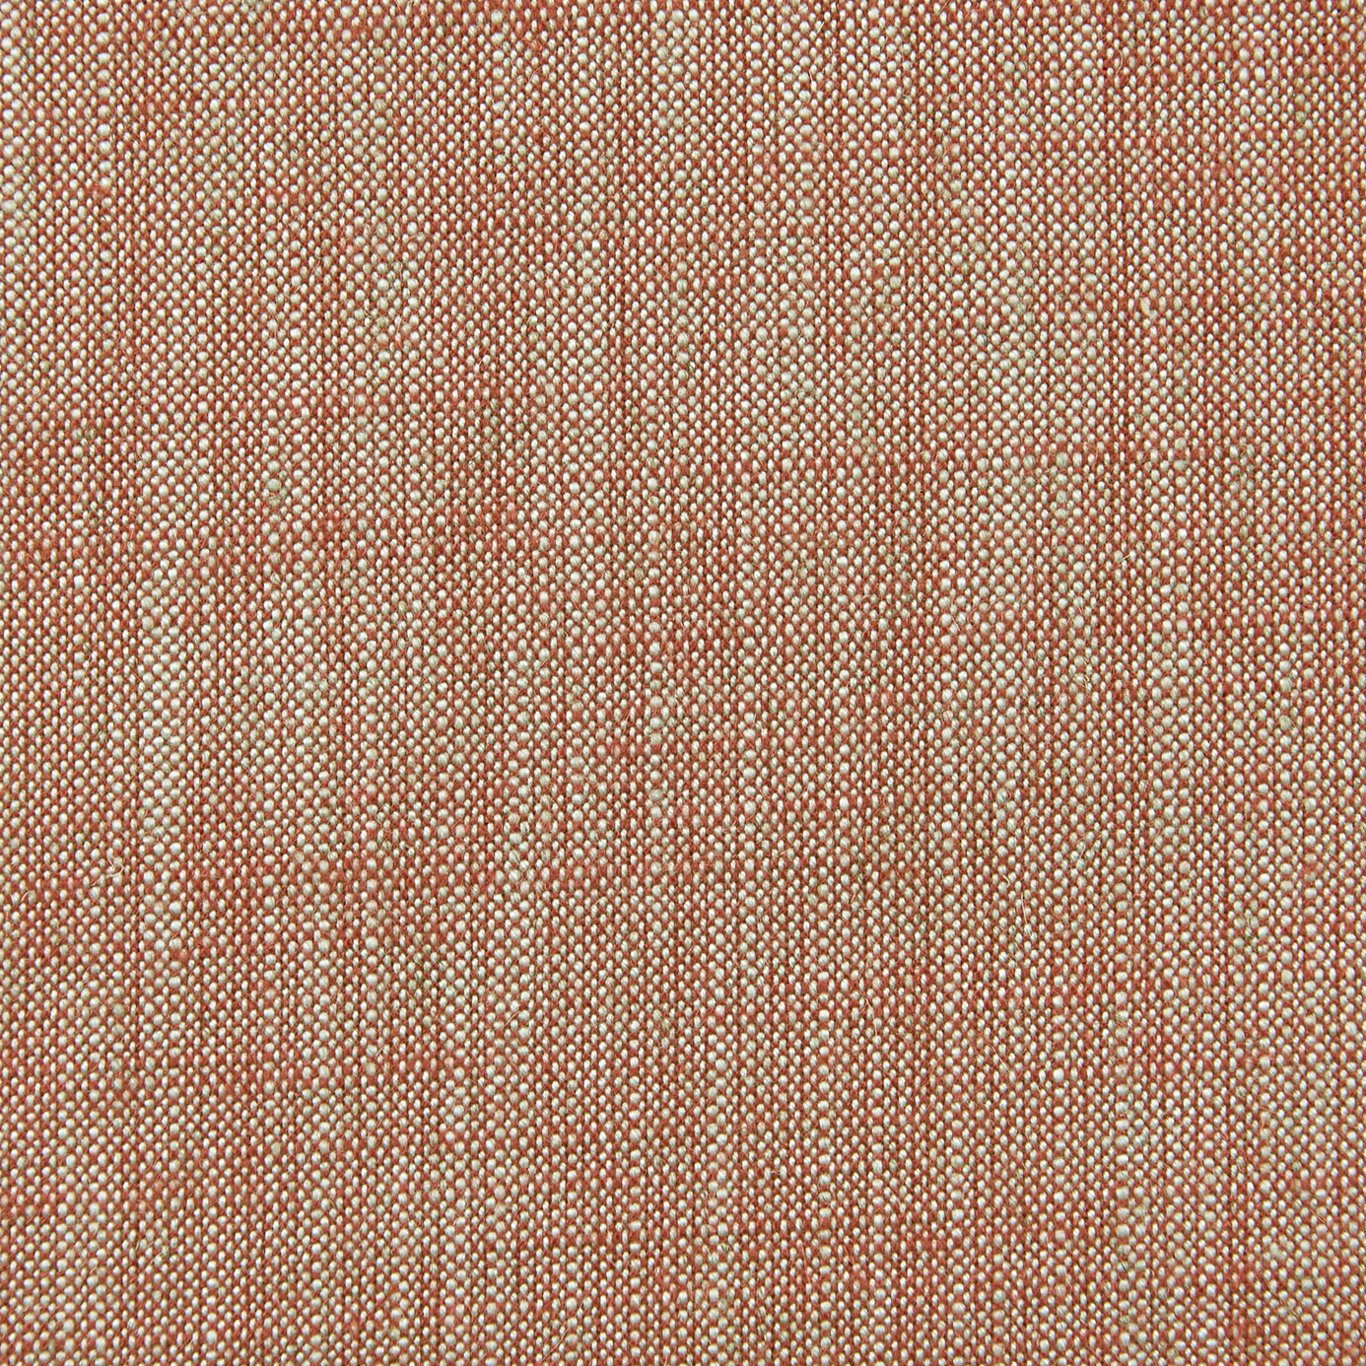 Biarritz Paprika Fabric by CNC